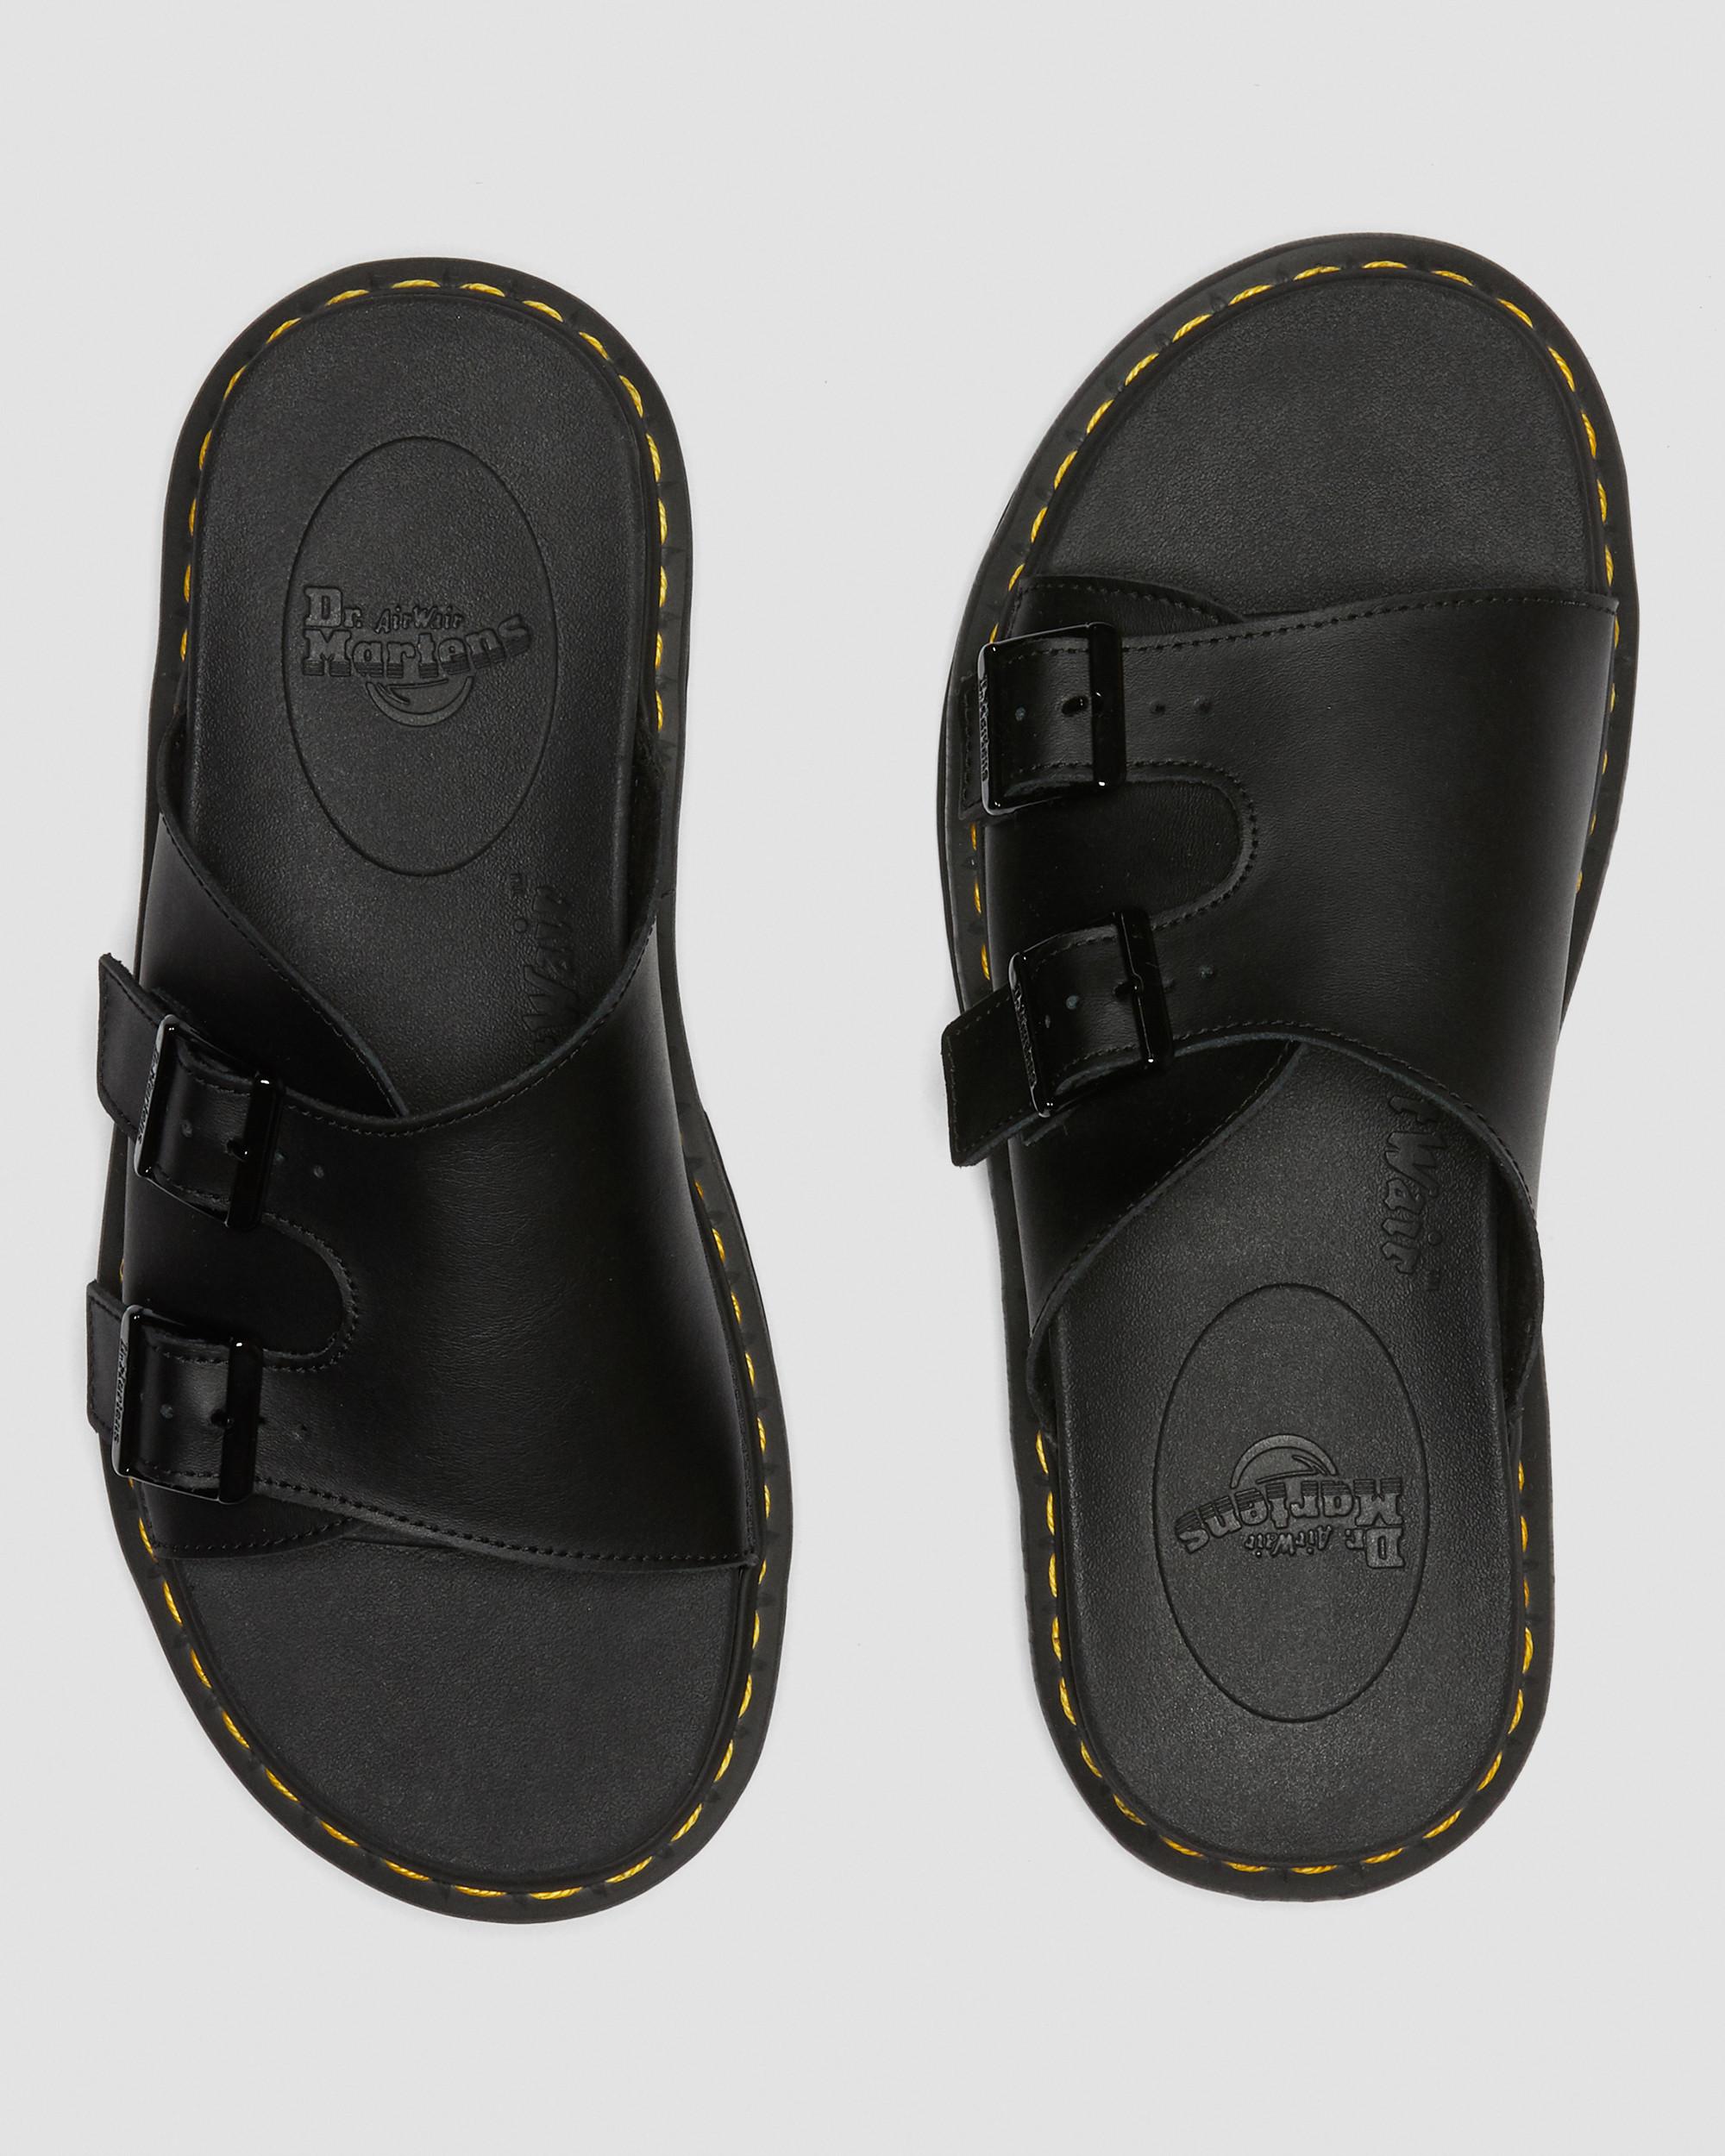 DR MARTENS Dax Men's Leather Slide Sandals